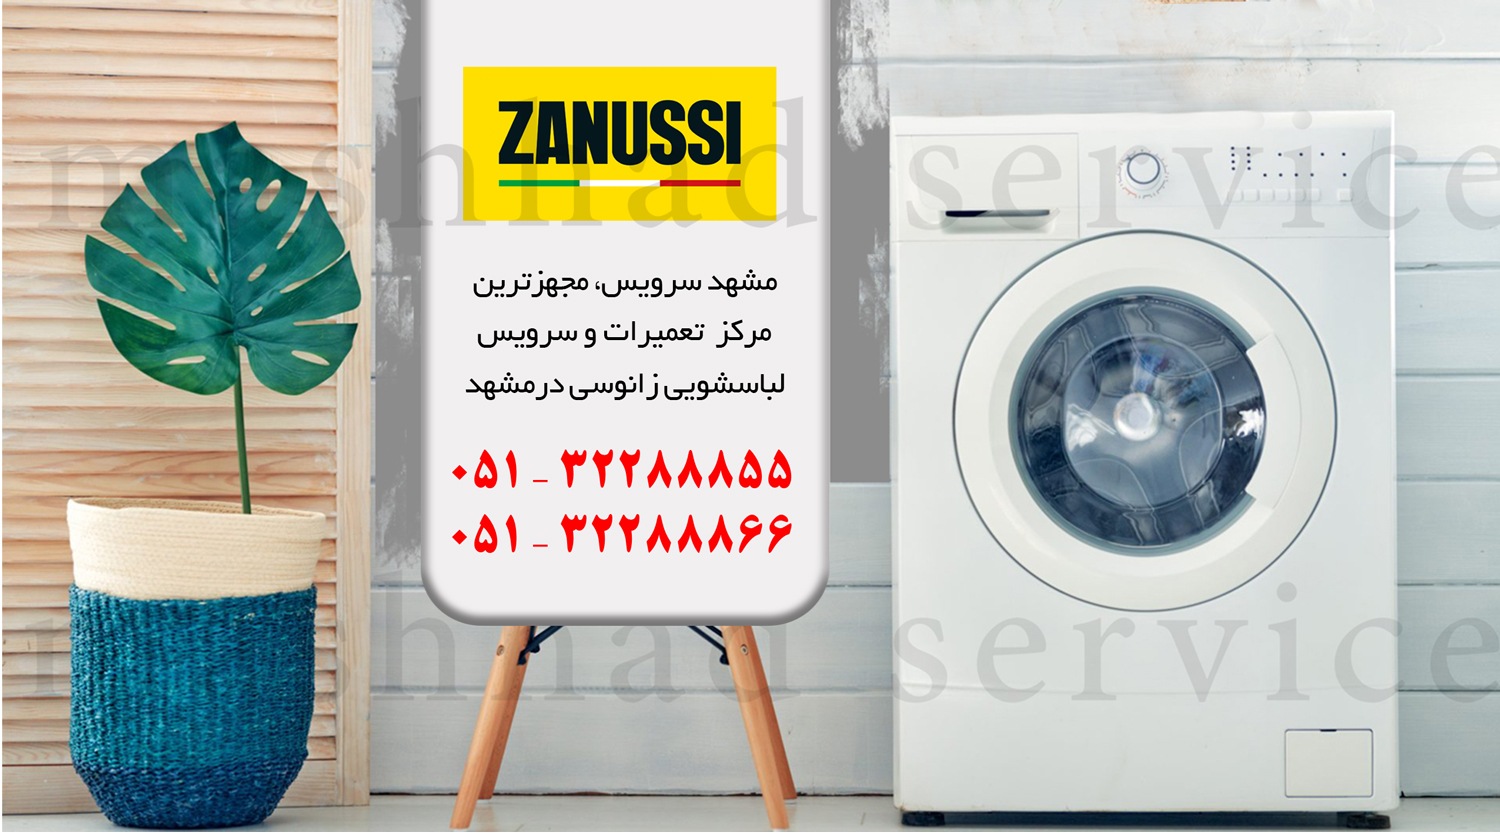 تعمیر ماشین لباسشویی زانوسی در مشهد